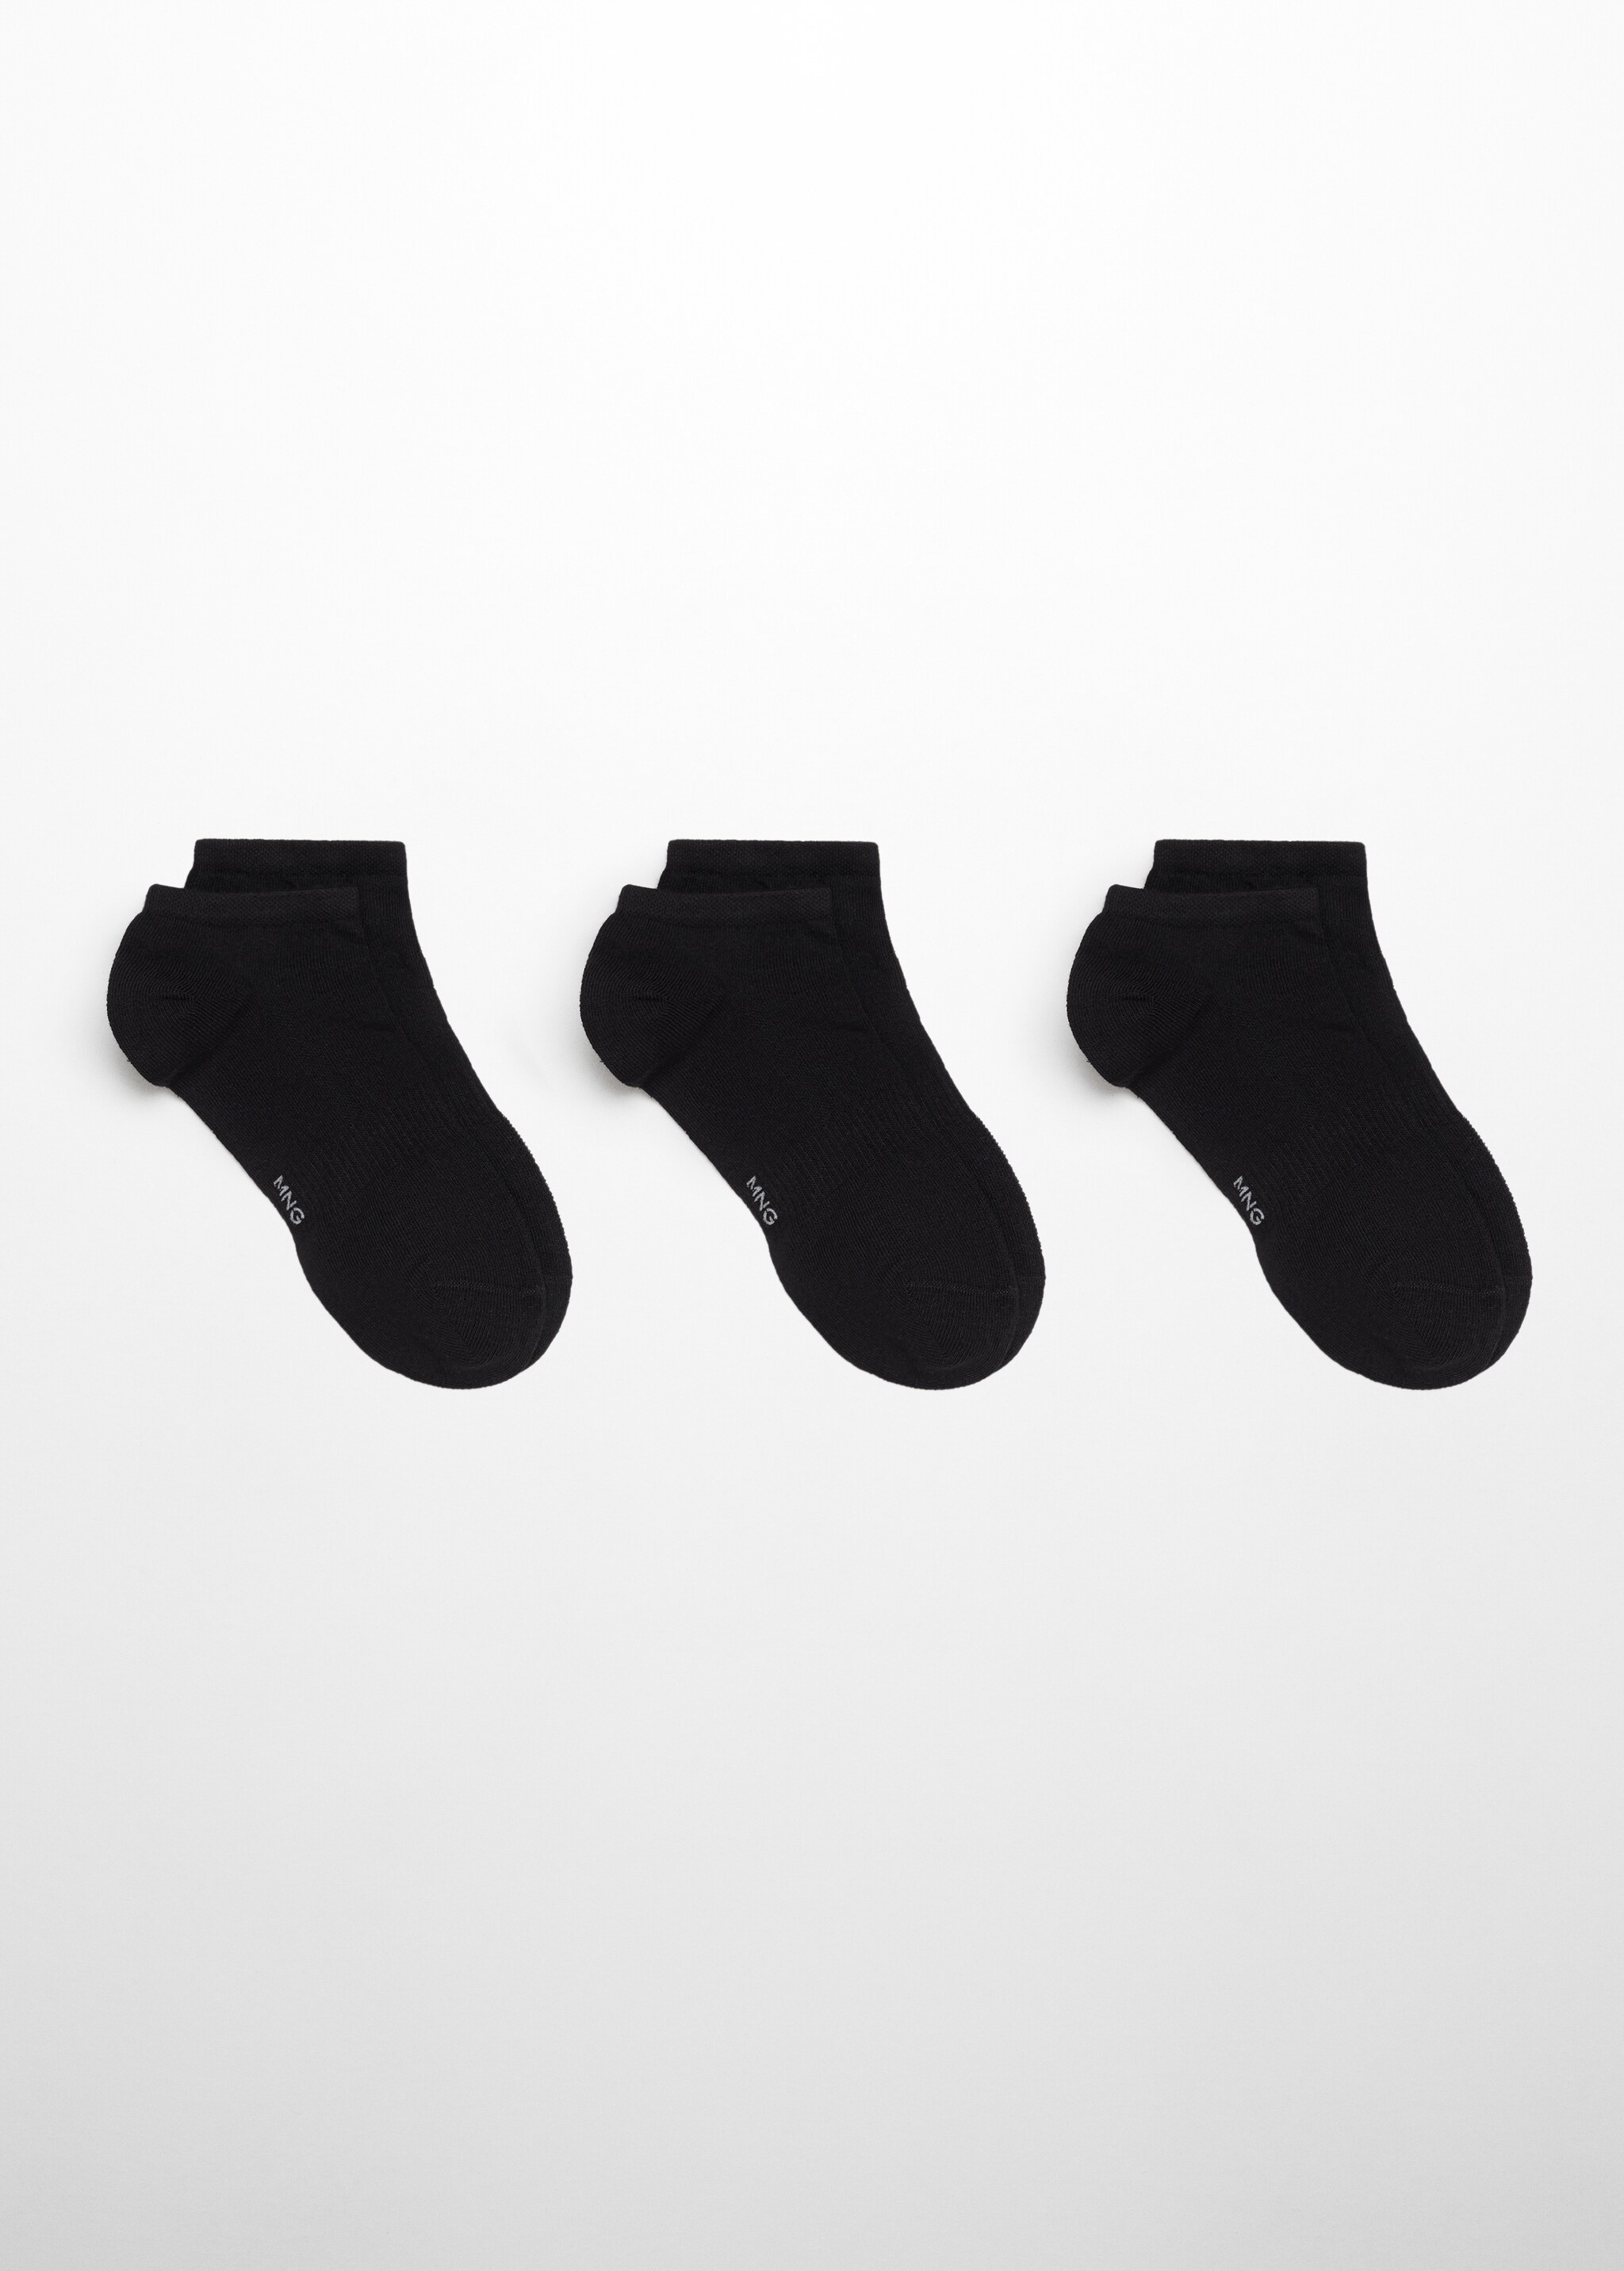 Pack 3 calzini cotone tinta unita - Articolo senza modello